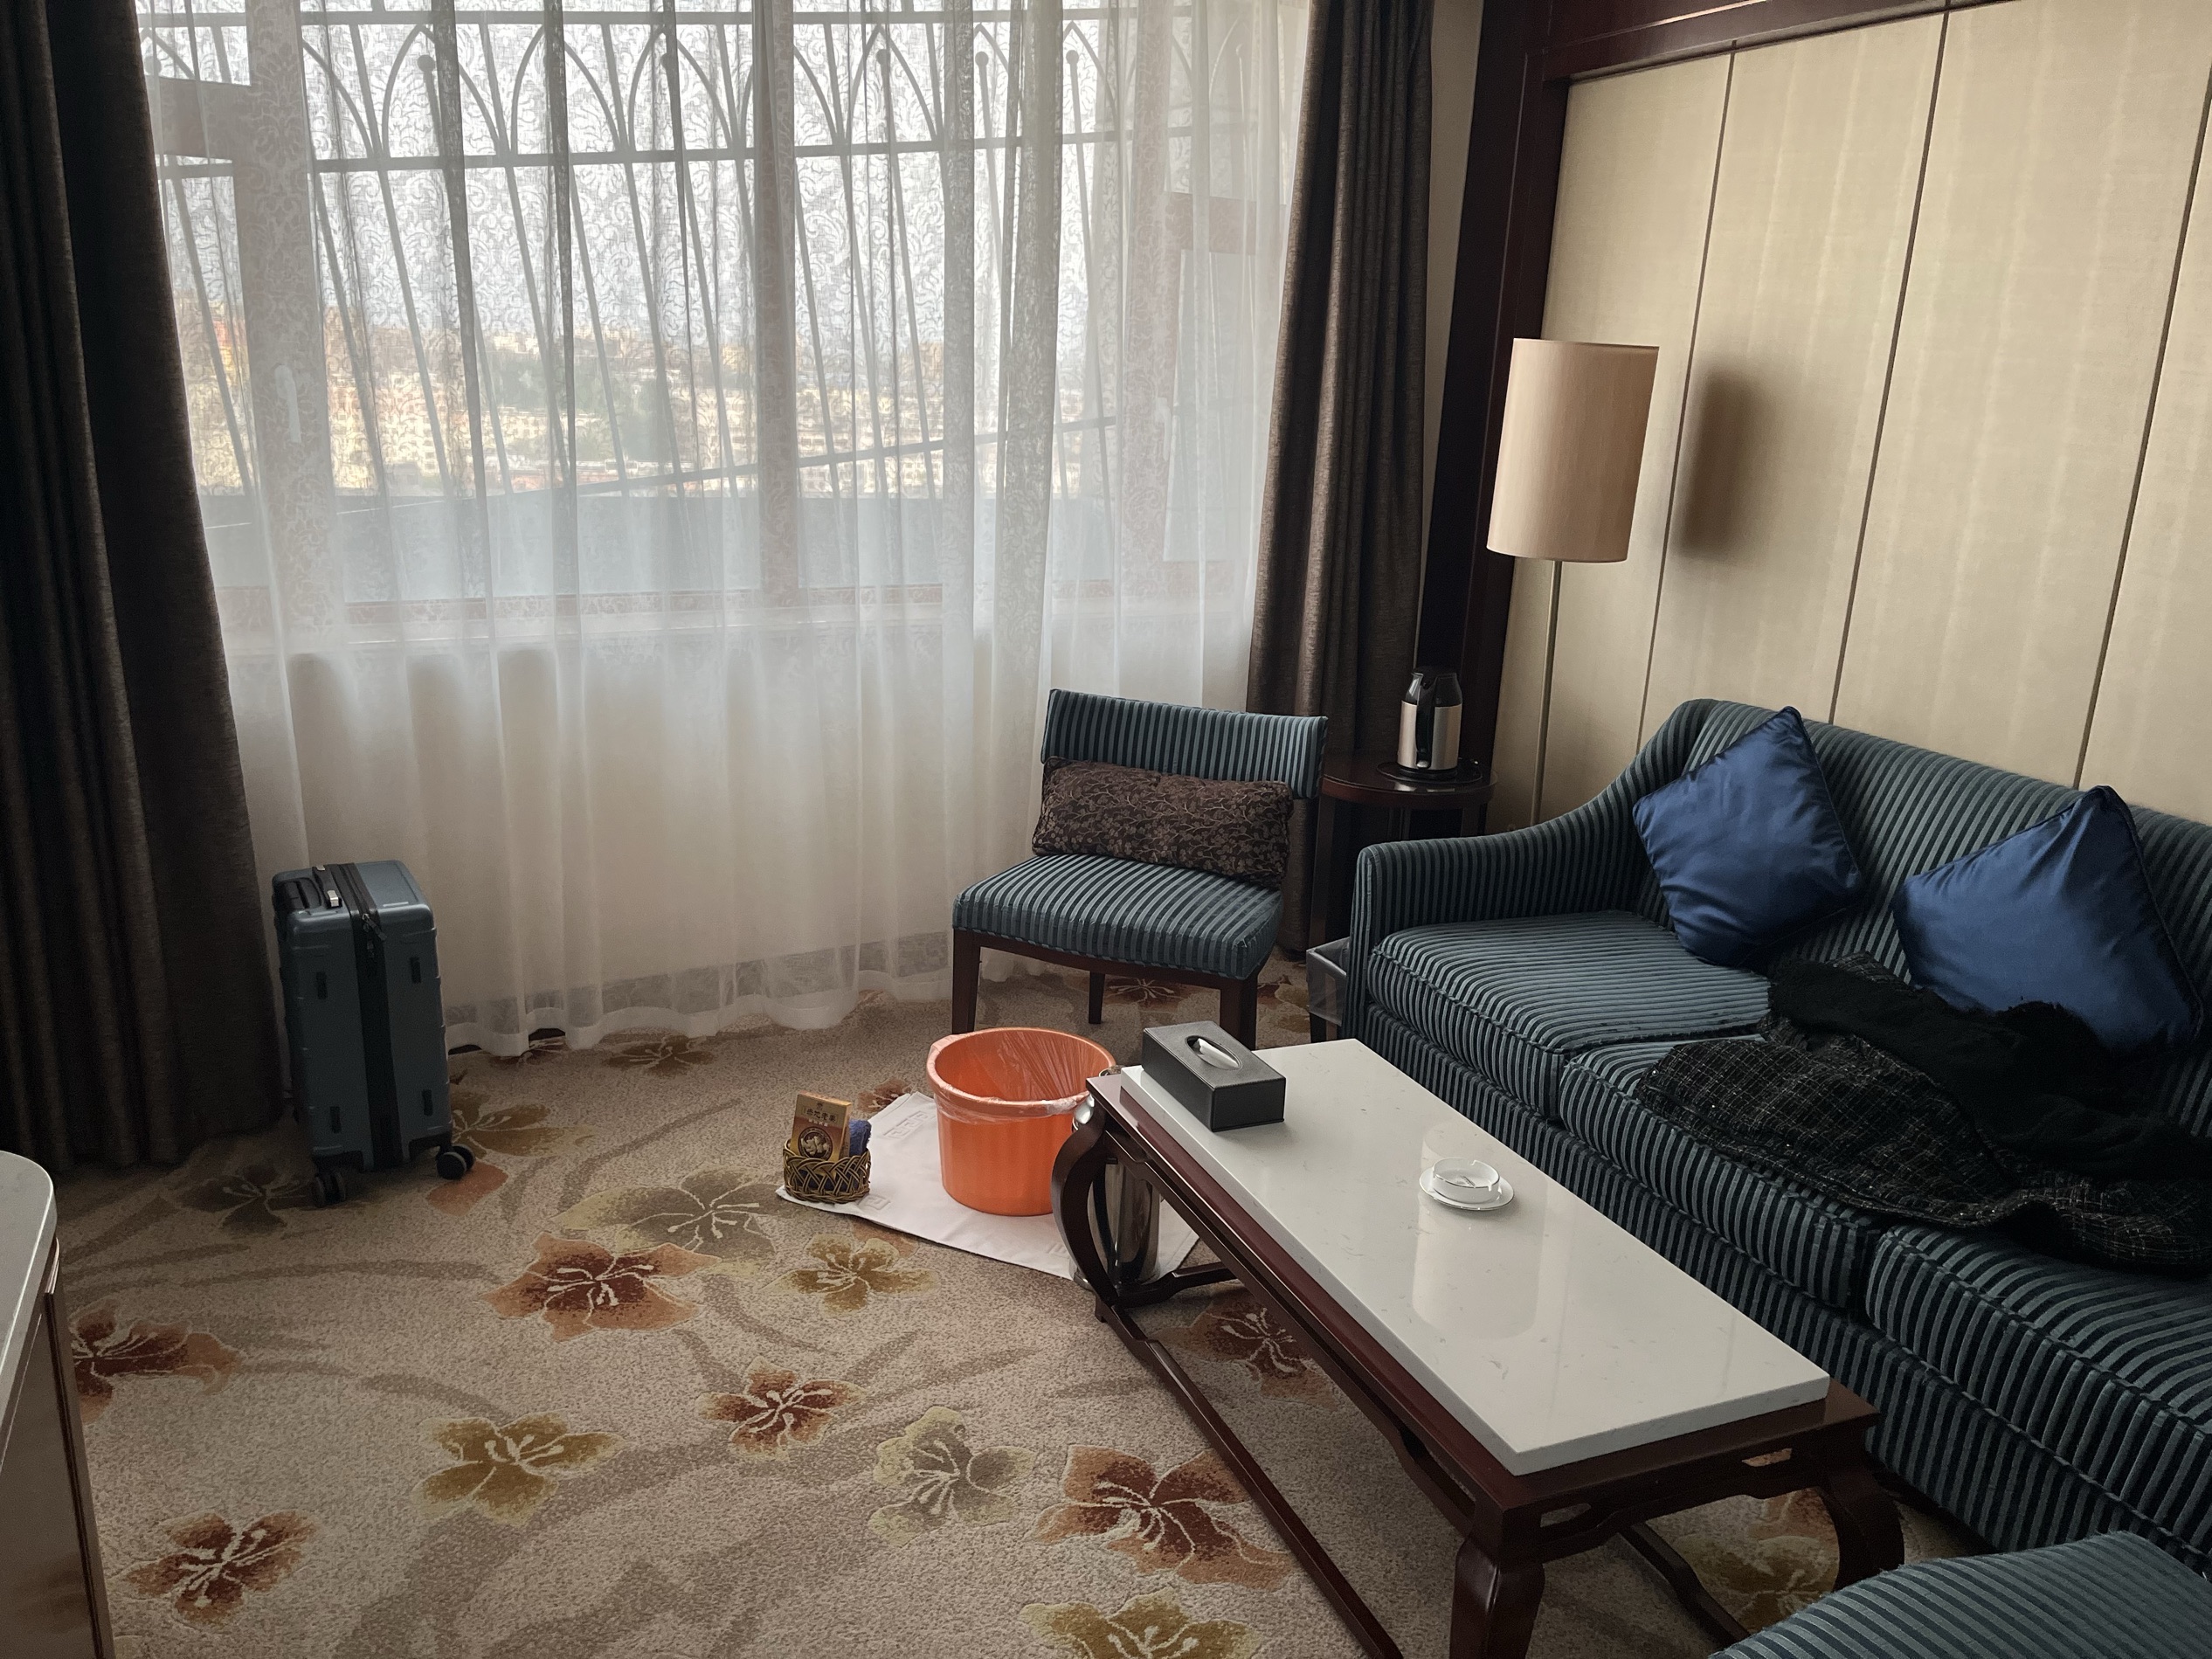 这是青甘大环线中住的最舒心的酒店，服务非常周到，临时订的房间也不贵还帮我升级了，住两天每天提供黄瓜面